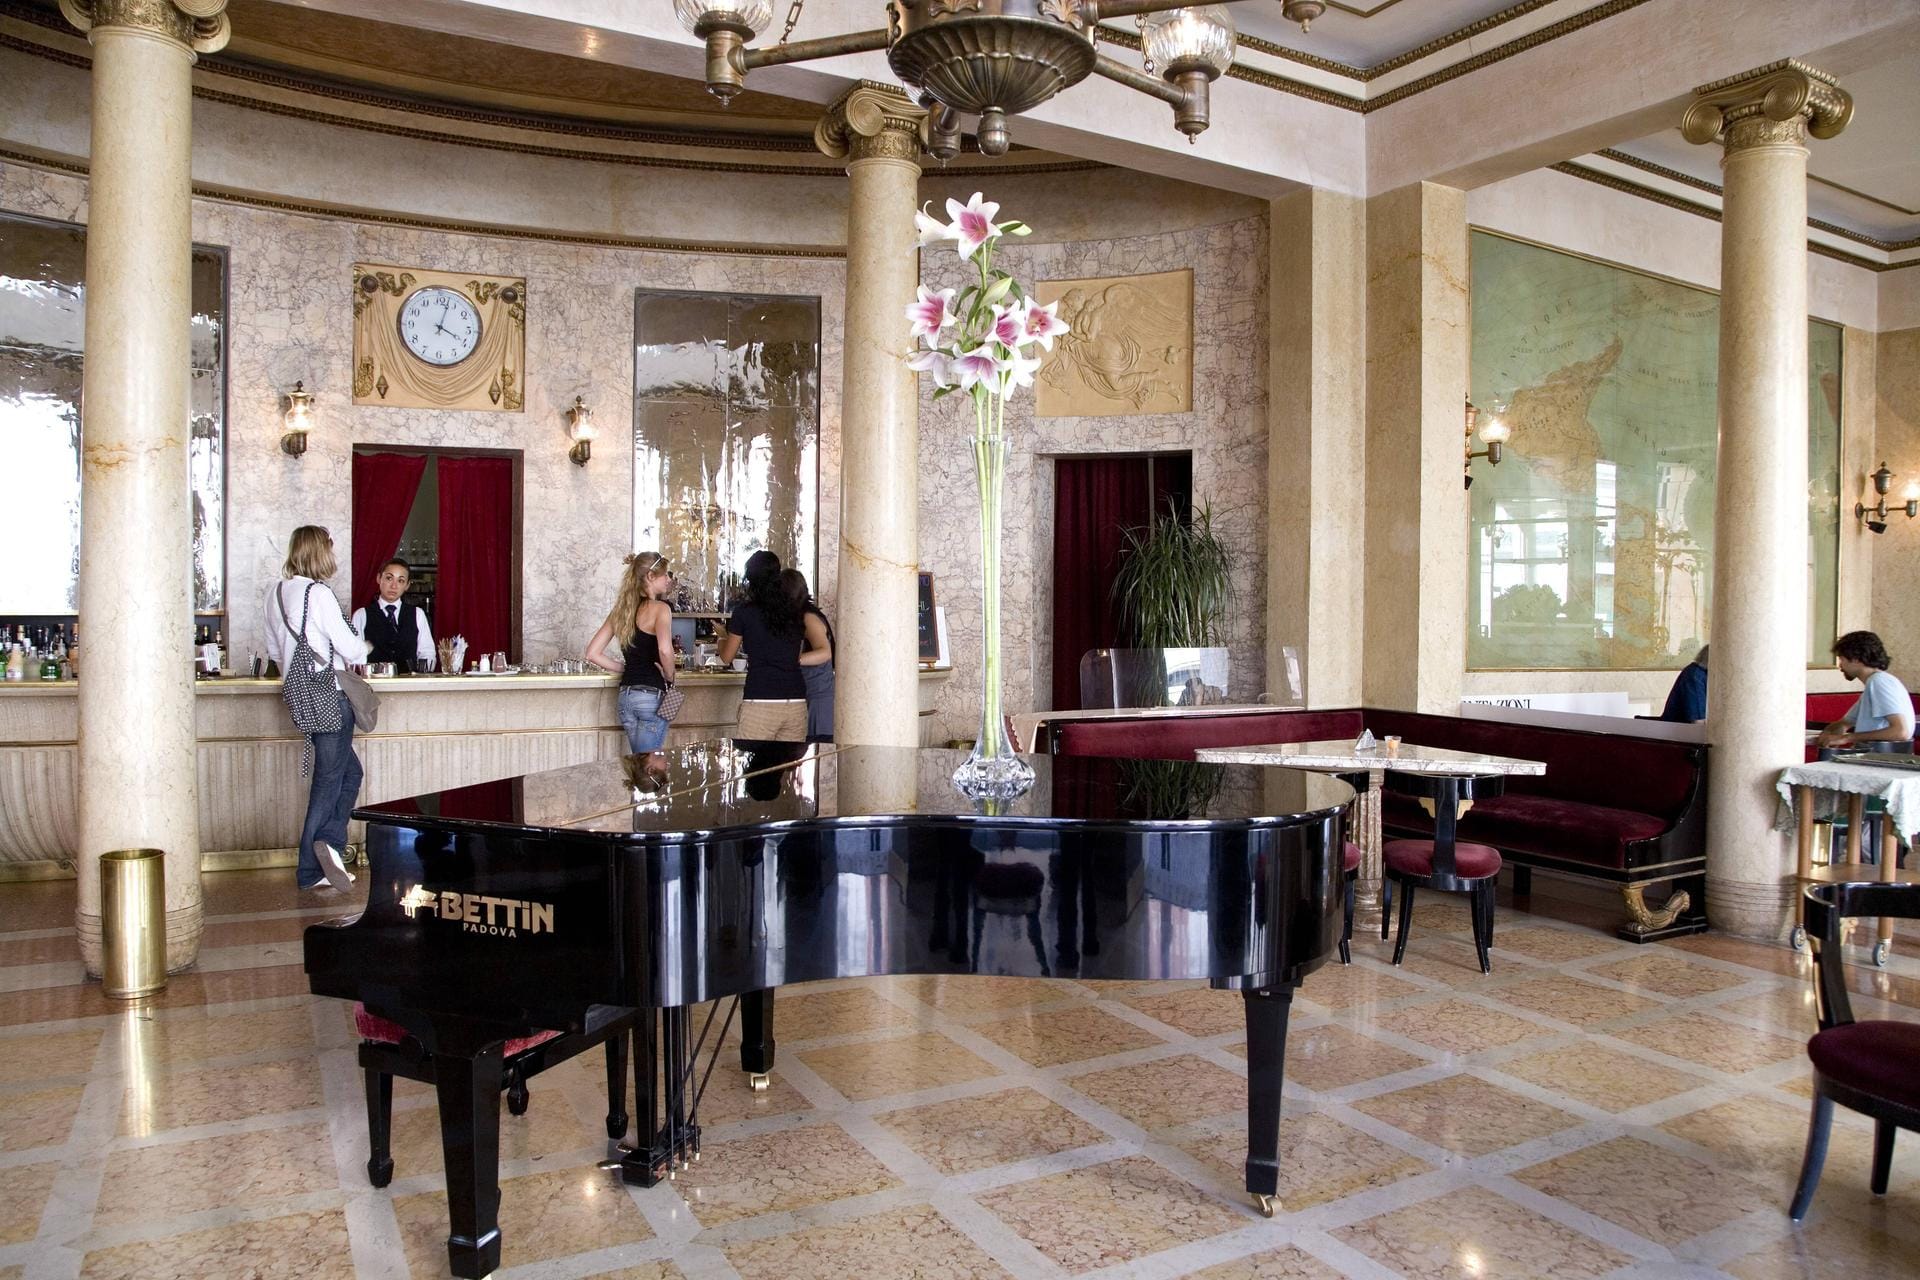 Das Kaffeehaus Pedrocchi in Padua (Italien) ist bekannt für seinen eklektischen Baustil, außen venezianisch-ägyptisch und innen neo-klassizistisch mit hohen Decken und Säulen.